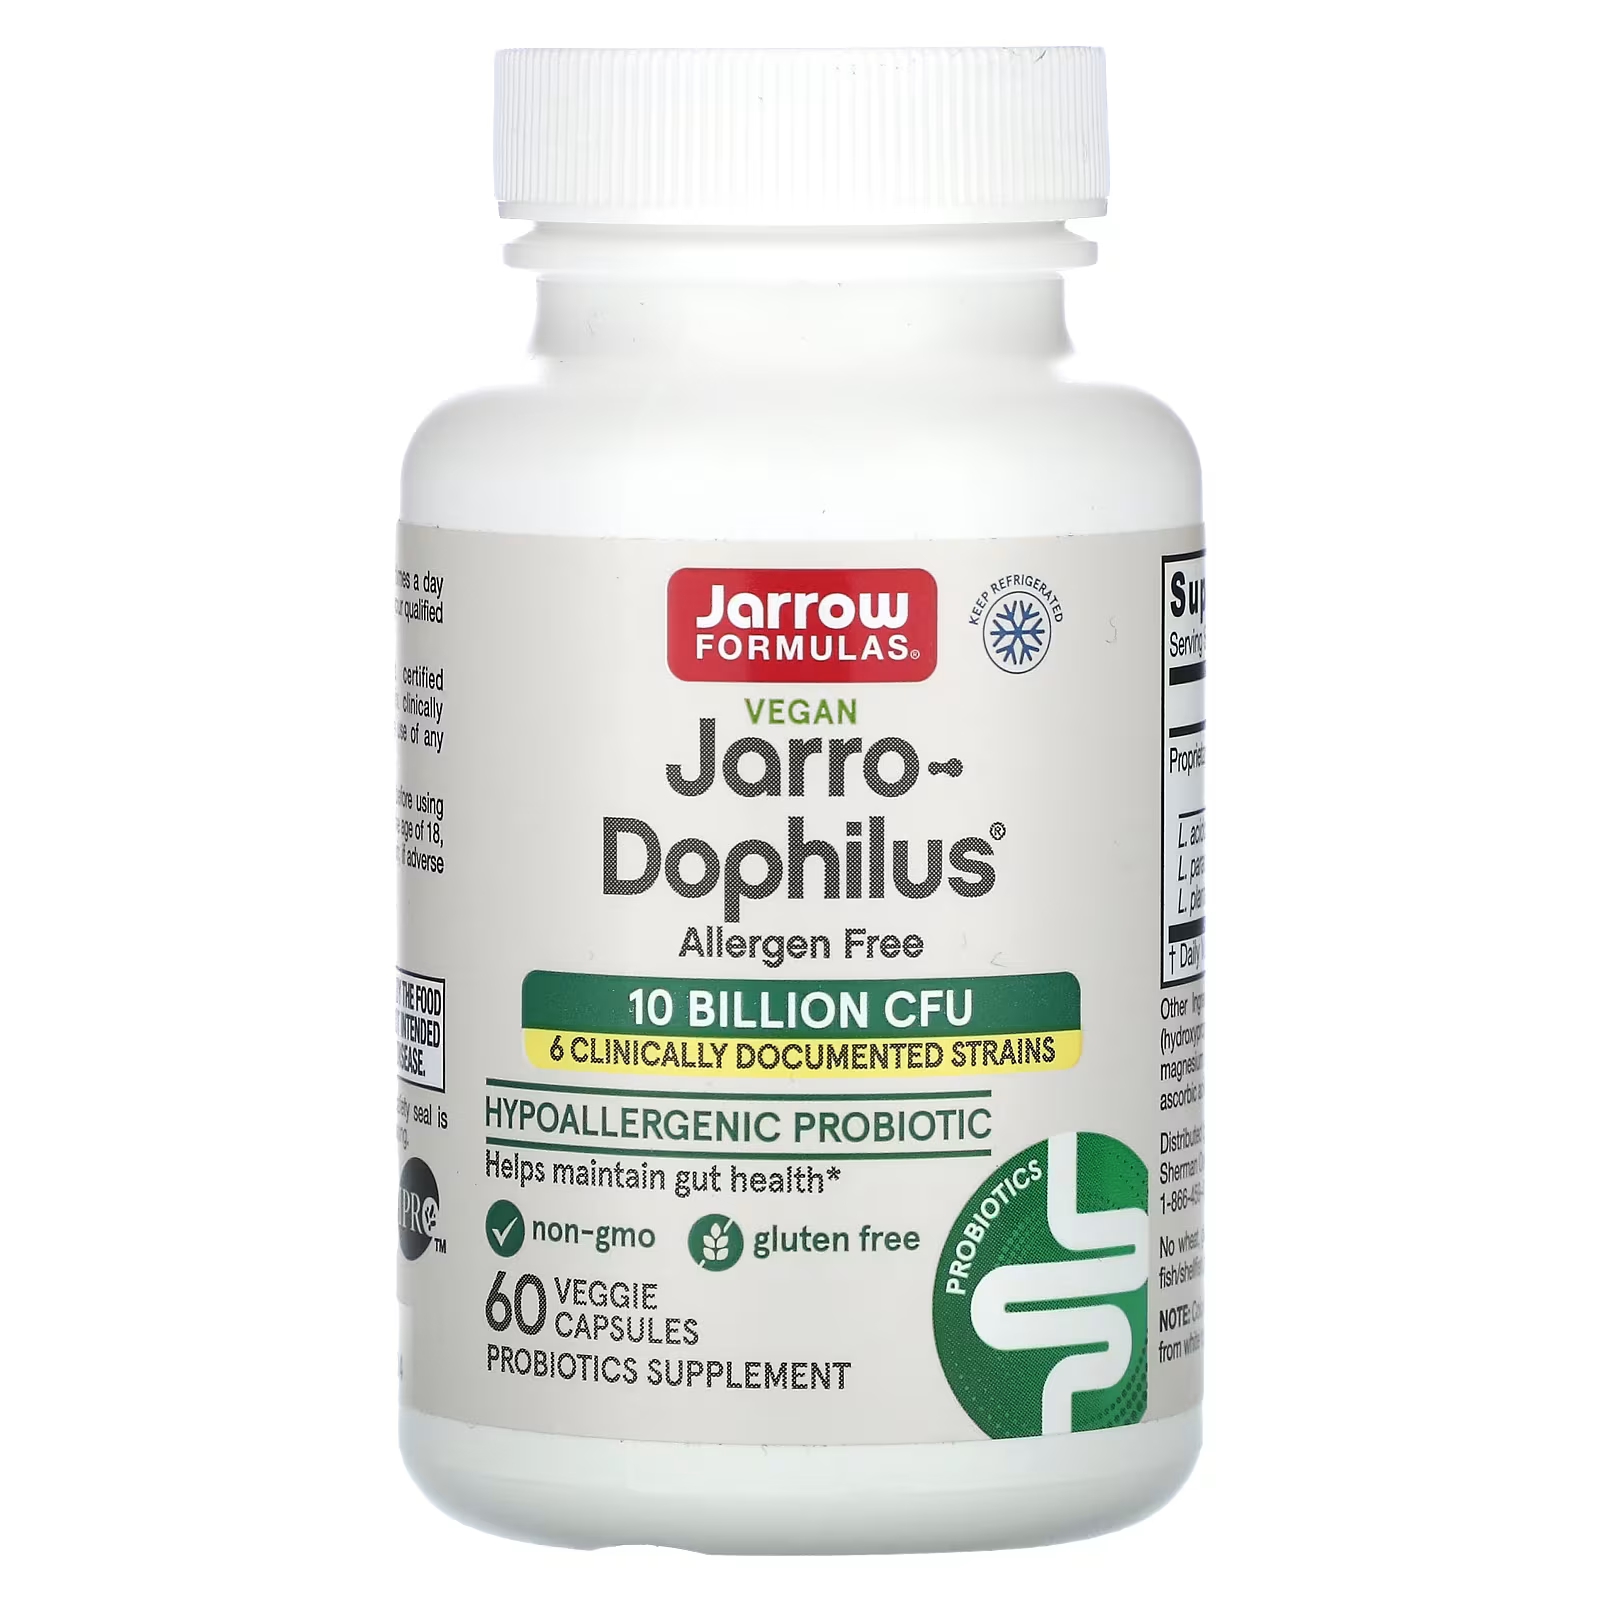 пробиотики для детей со вкусом малины jarrow formulas jarro dophilus kids 1 billion cfu в жевательных таблетках 60 шт Добавка с пробиотиками Jarrow Formulas Jarro-Dophilus, 60 растительных капсул